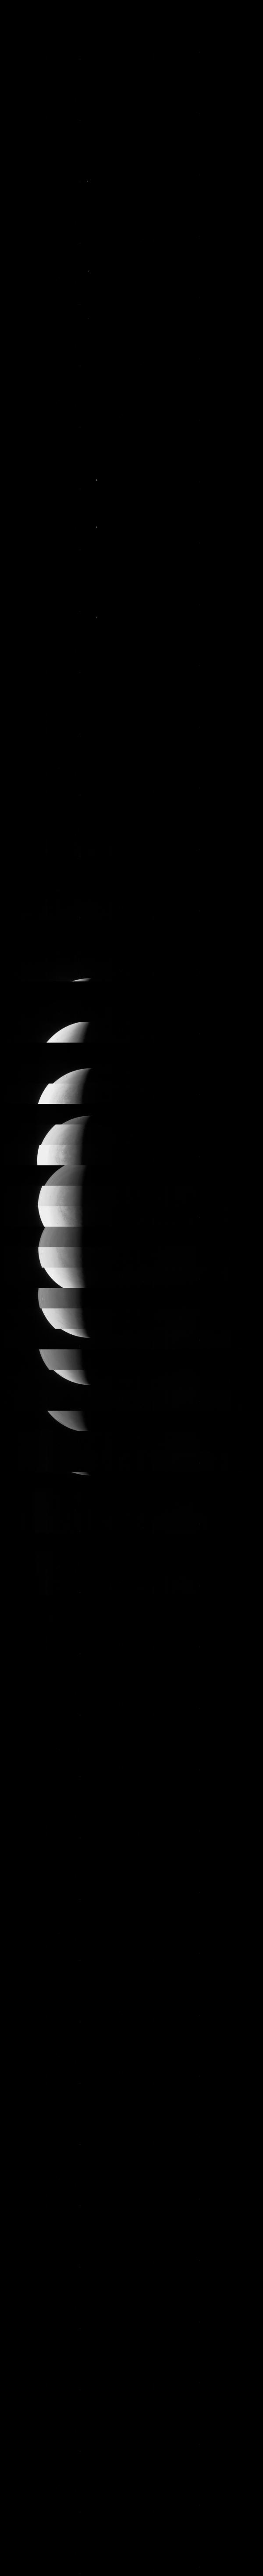 JunoCam - chiếc máy ảnh trên tàu vũ trụ Juno của NASA đã gửi về những hình ảnh đẹp và độc đáo của sao Kim. Hãy xem hình liên quan đến từ khóa \